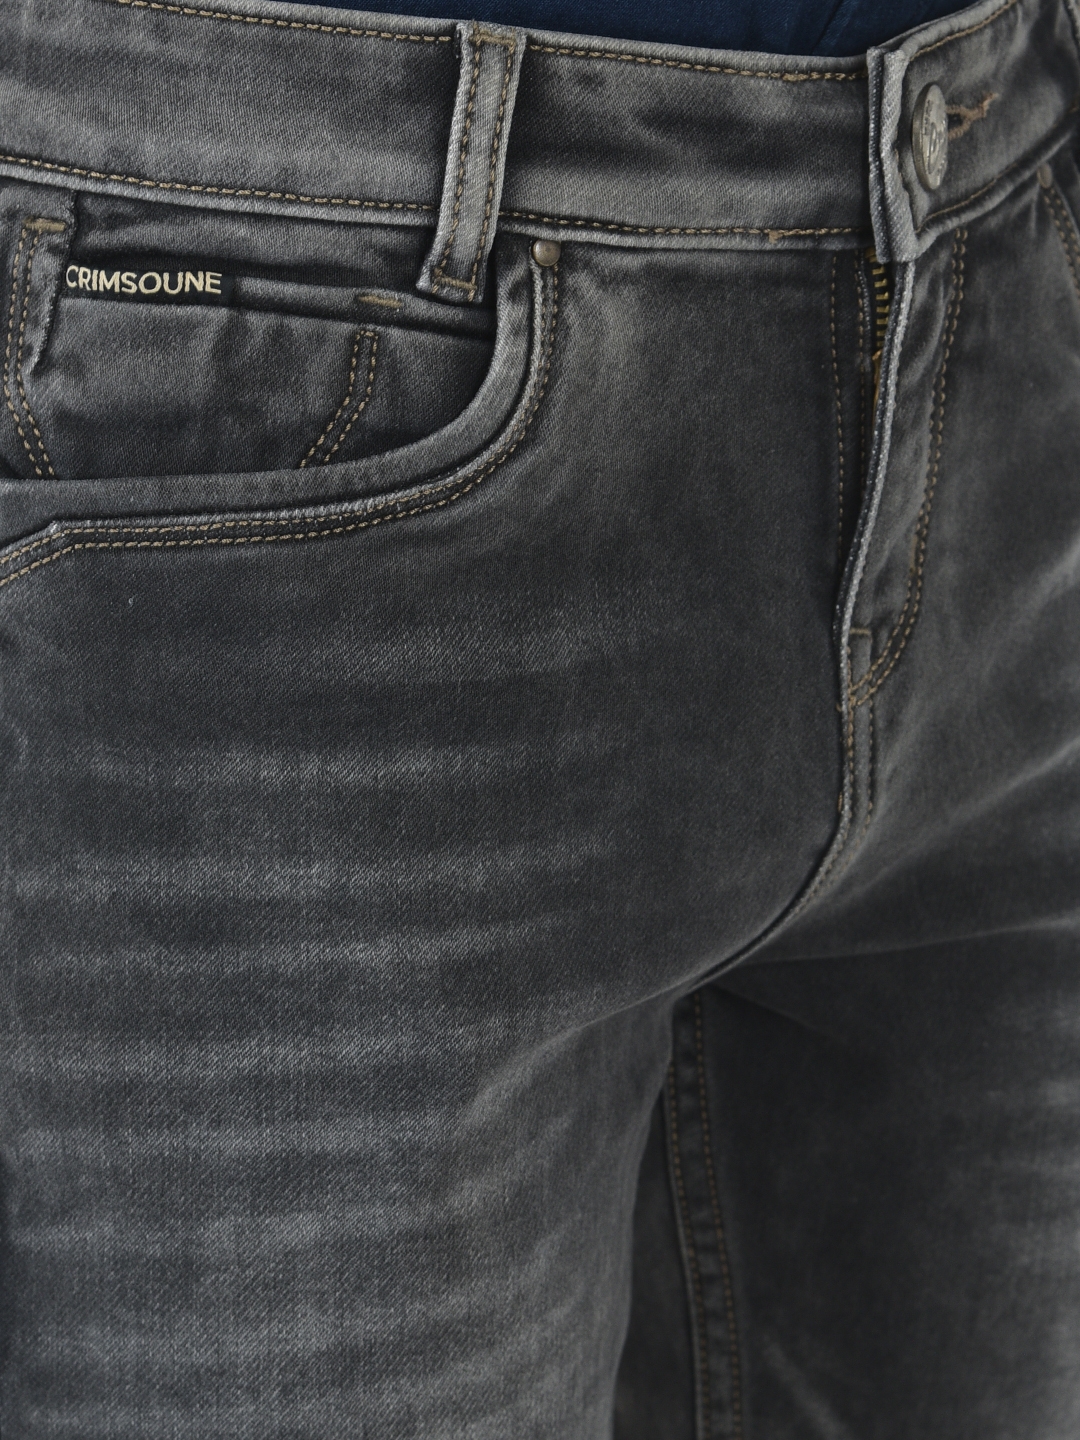 Crimsoune Club | Crimsoune Club Boy Grey Solid Light Fade Jeans 5